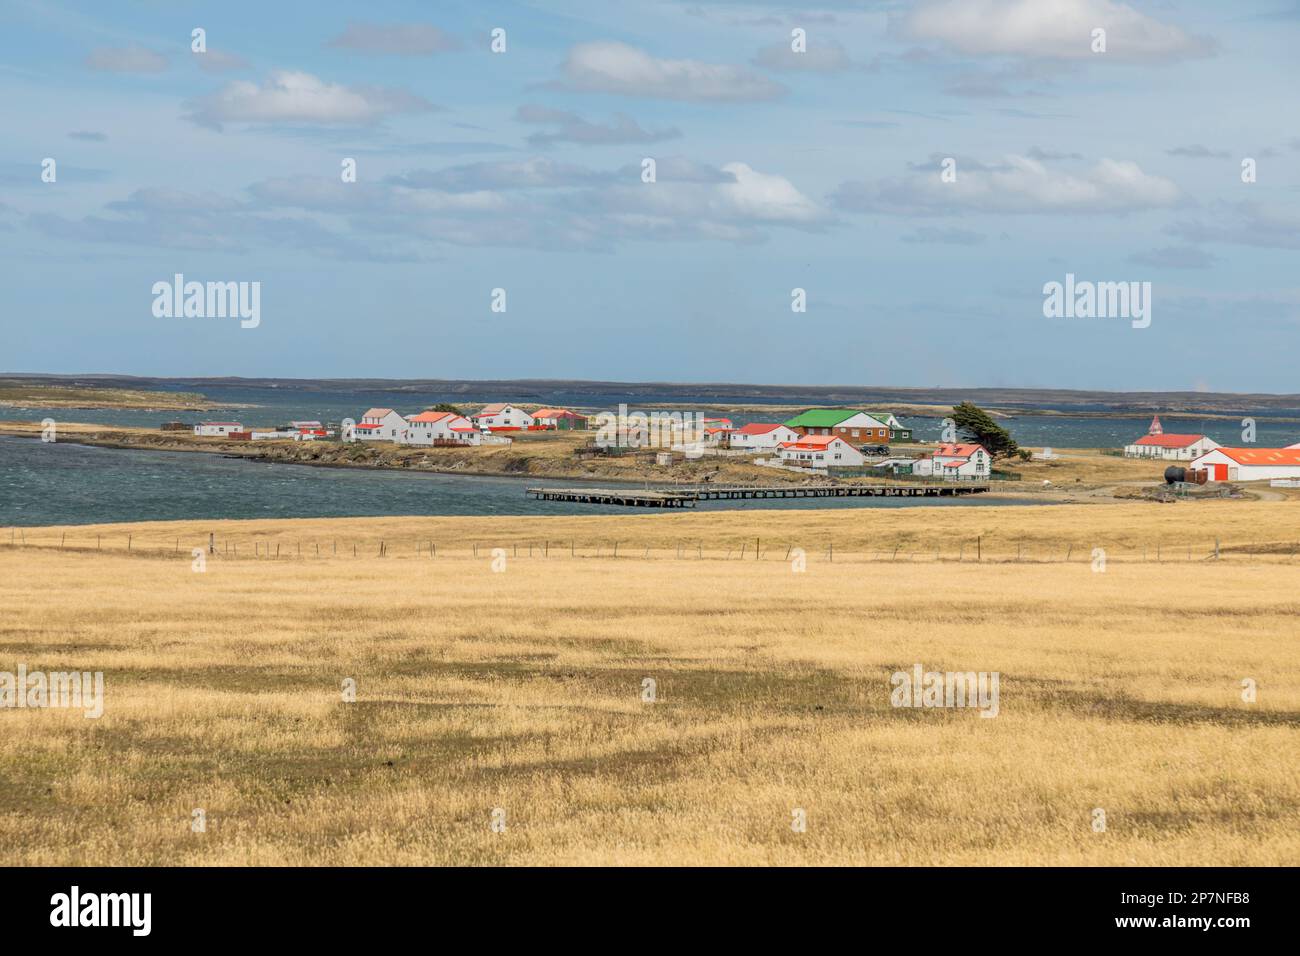 Die kleine Siedlung in Goose Green auf den Falklandinseln. Schauplatz der Schlachten während des Falklands-Krieges von 1982. Stockfoto